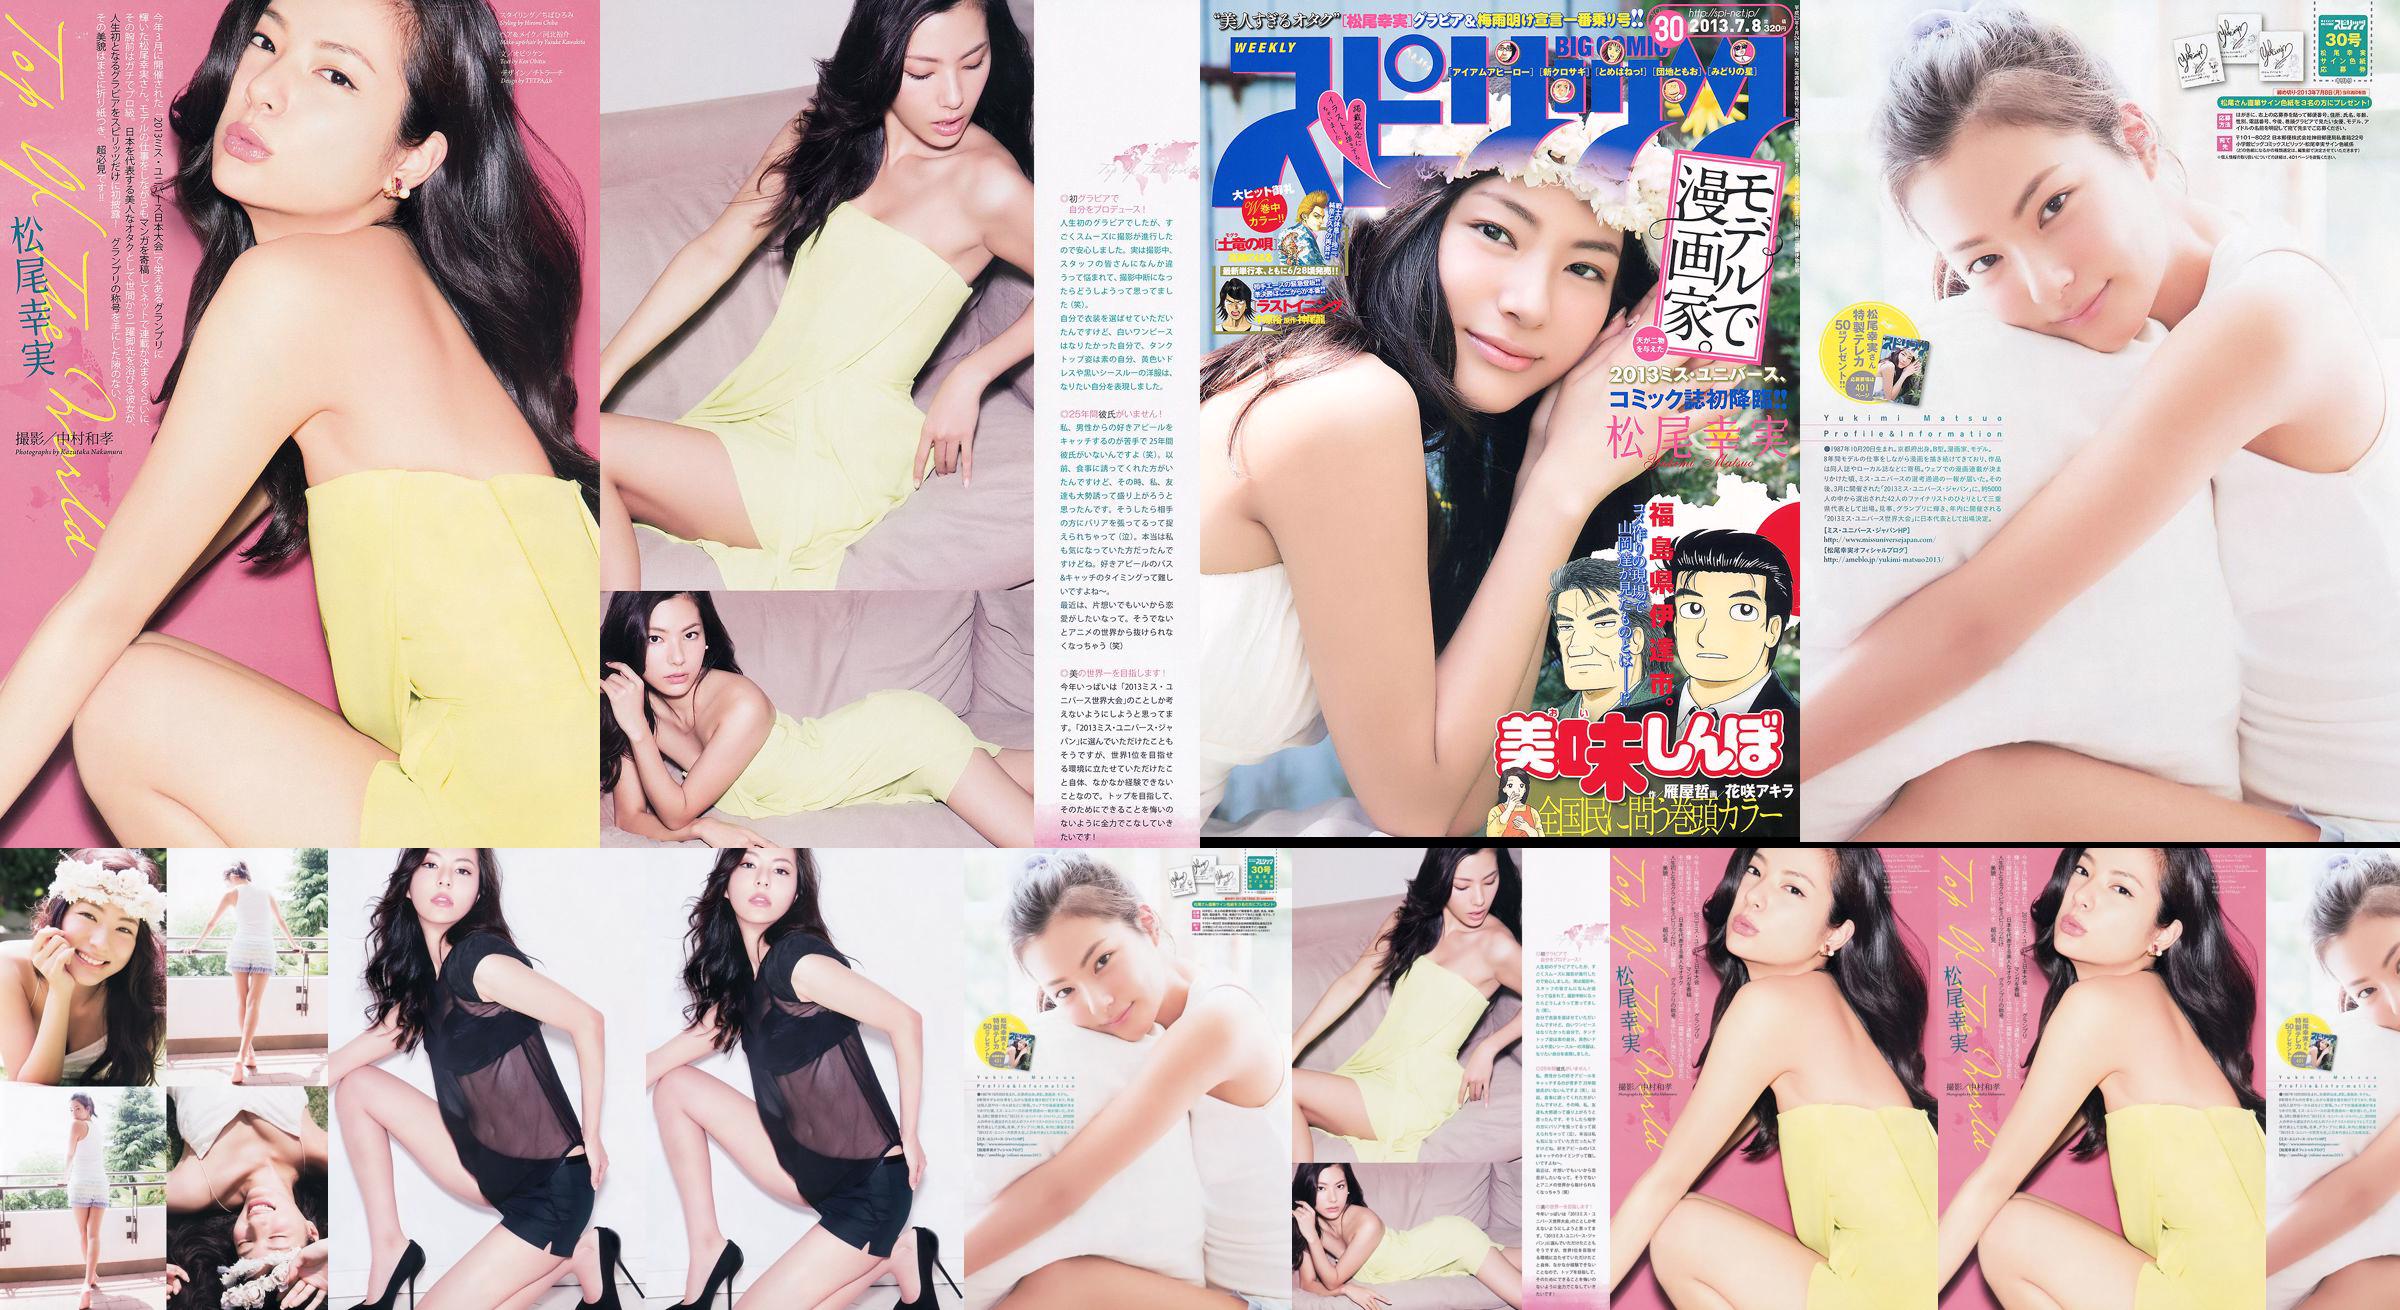 [Weekly Big Comic Spirits] Komi Matsuo 2013 No.30 Photo Magazine No.b0b4cb หน้า 1